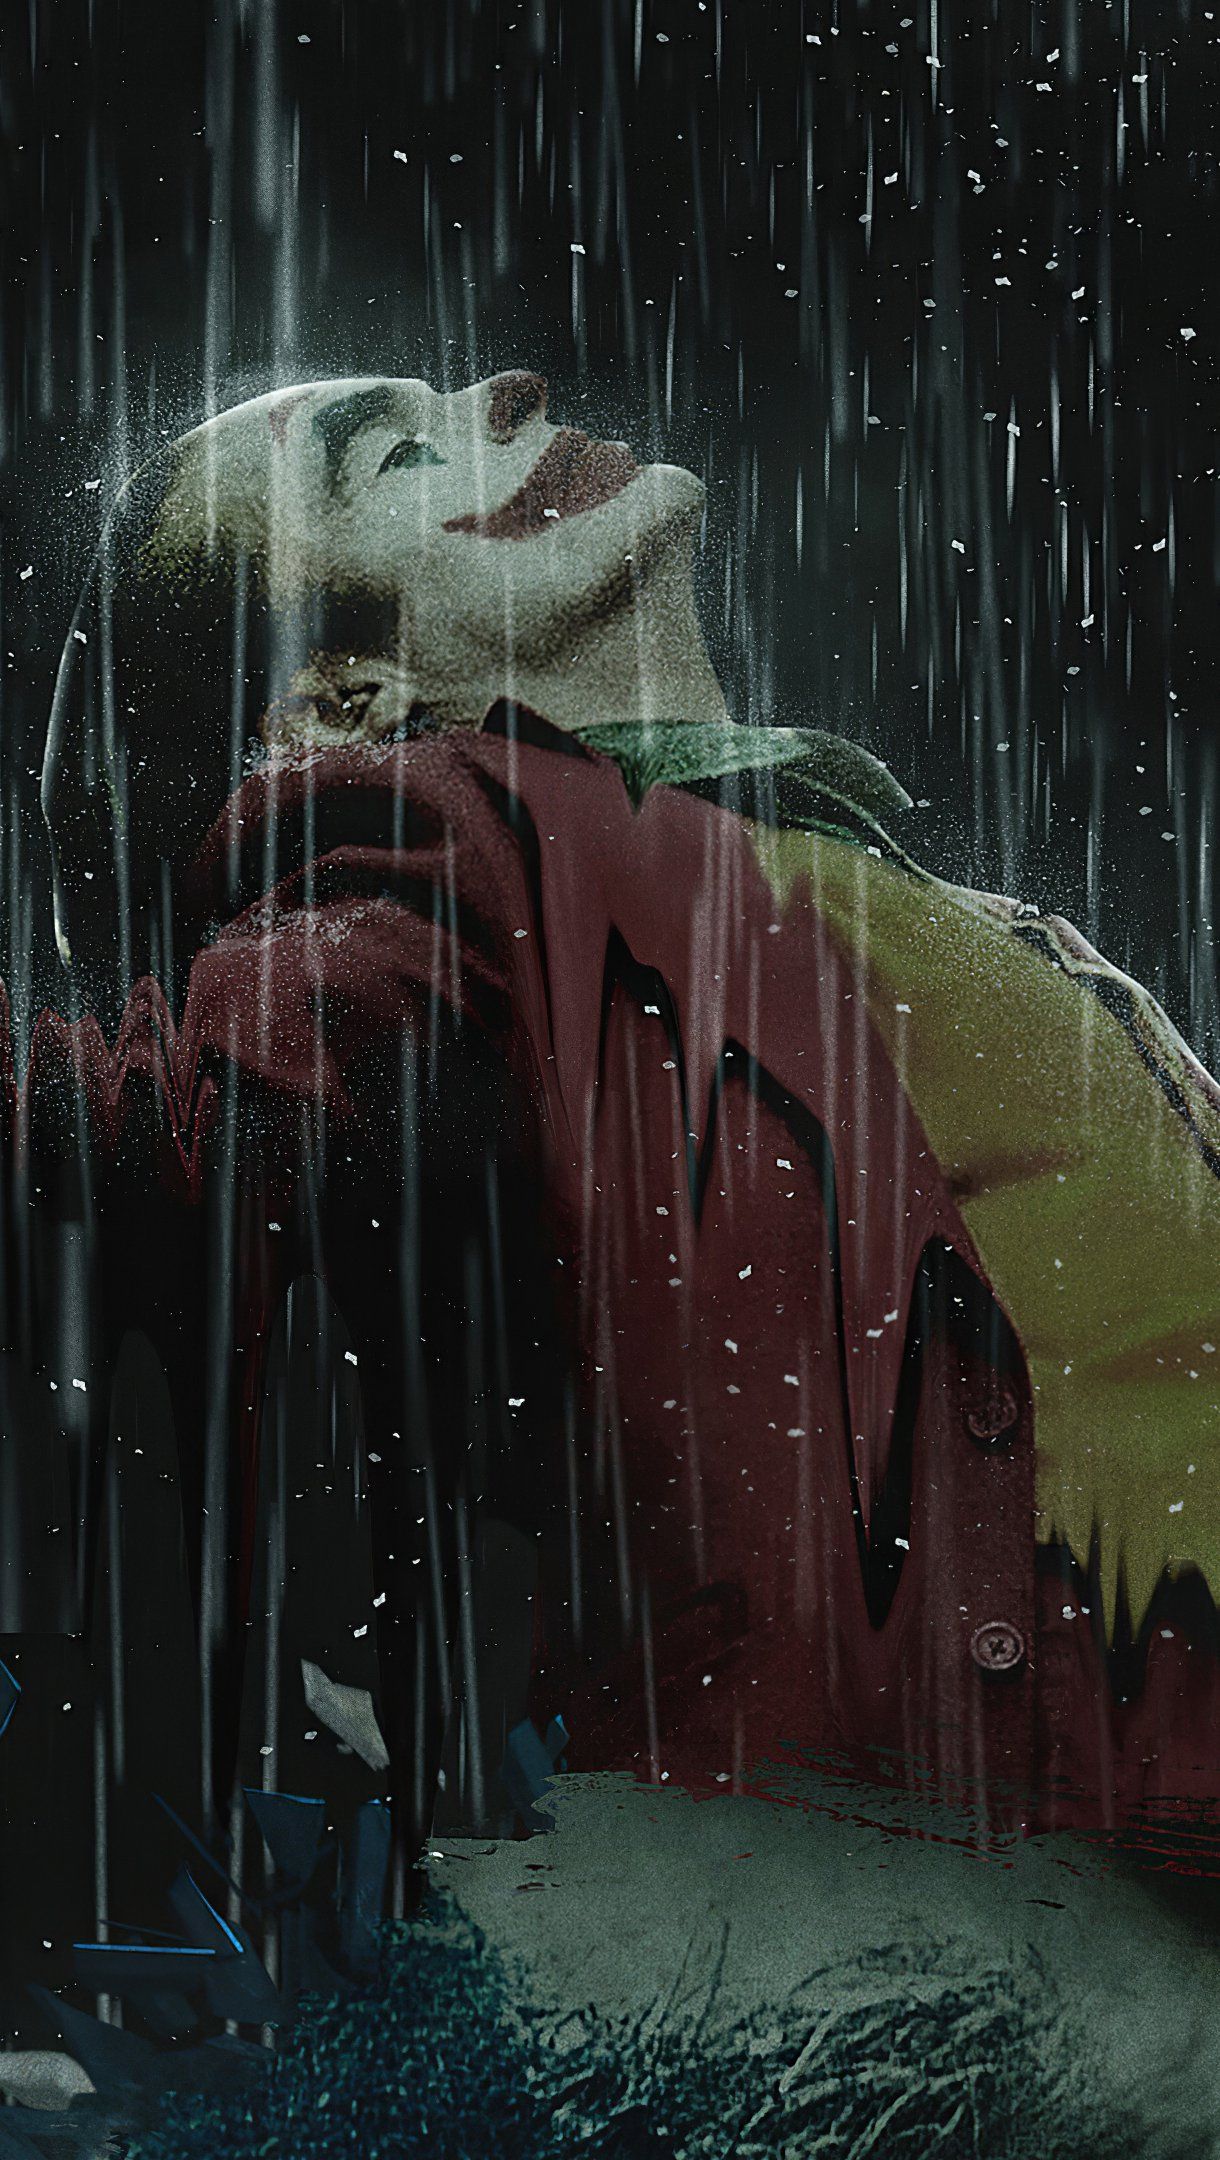 Joker in the rain Wallpaper 4k Ultra HD